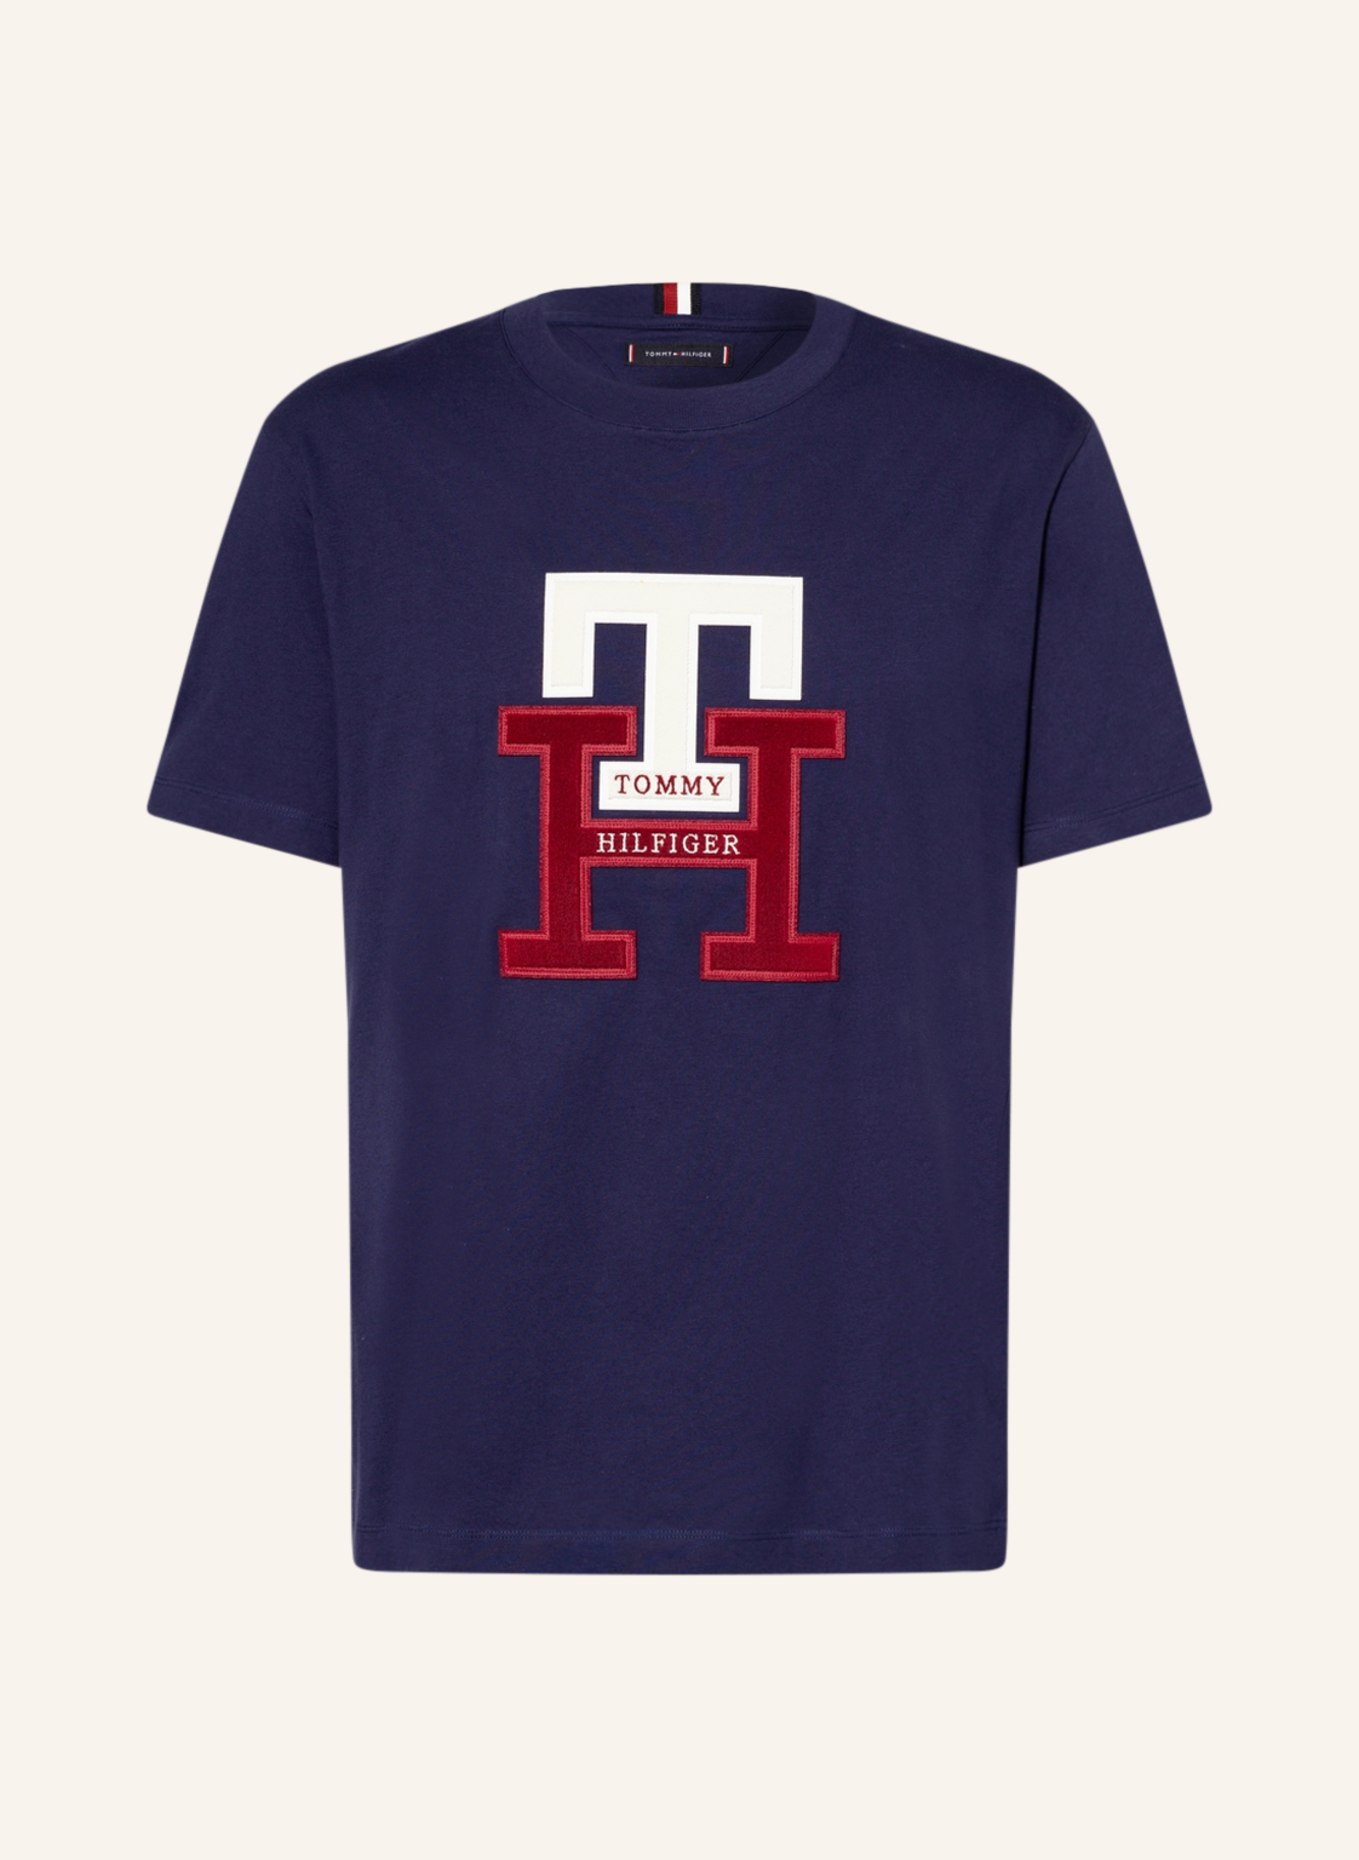 TOMMY HILFIGER T-Shirt, Farbe: DUNKELBLAU (Bild 1)